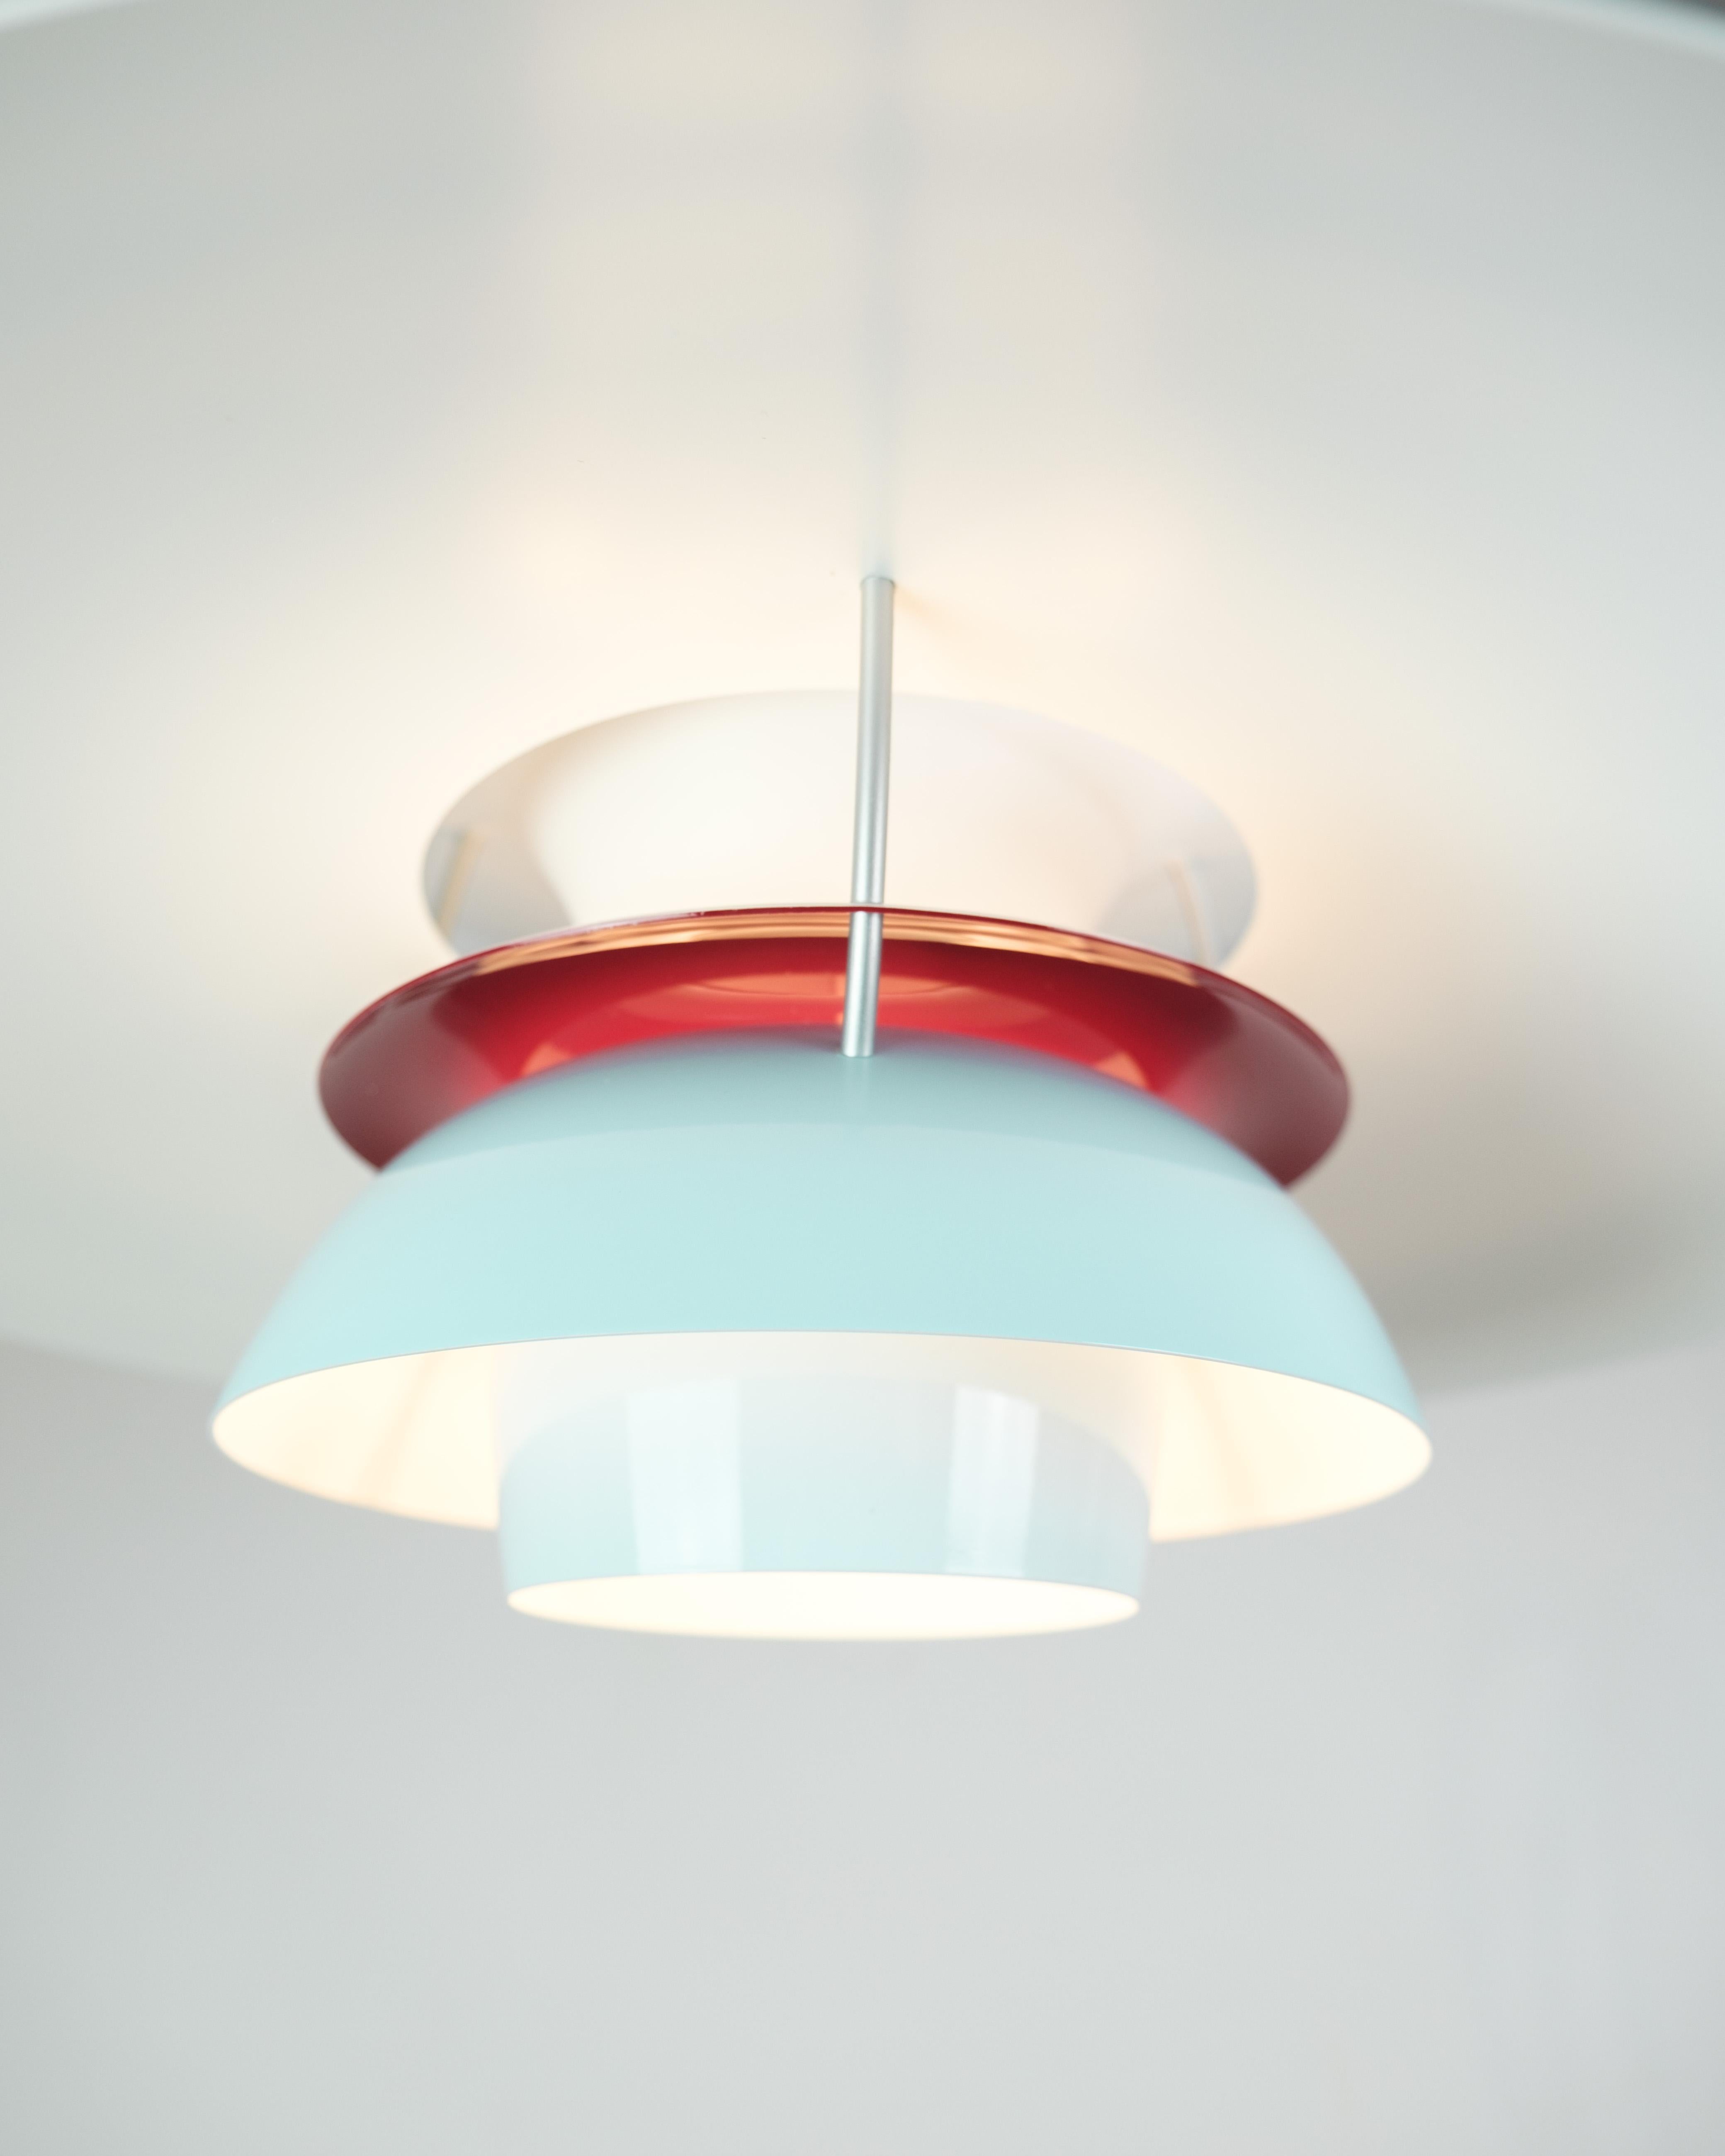 
Die von Poul Henningsen entworfene und von Louis Poulsen hergestellte Deckenleuchte PH5 ist eine Ikone des Beleuchtungsdesigns, die für ihre innovative Form und außergewöhnliche Funktionalität bekannt ist. In dieser Sonderausgabe kommt die Lampe in